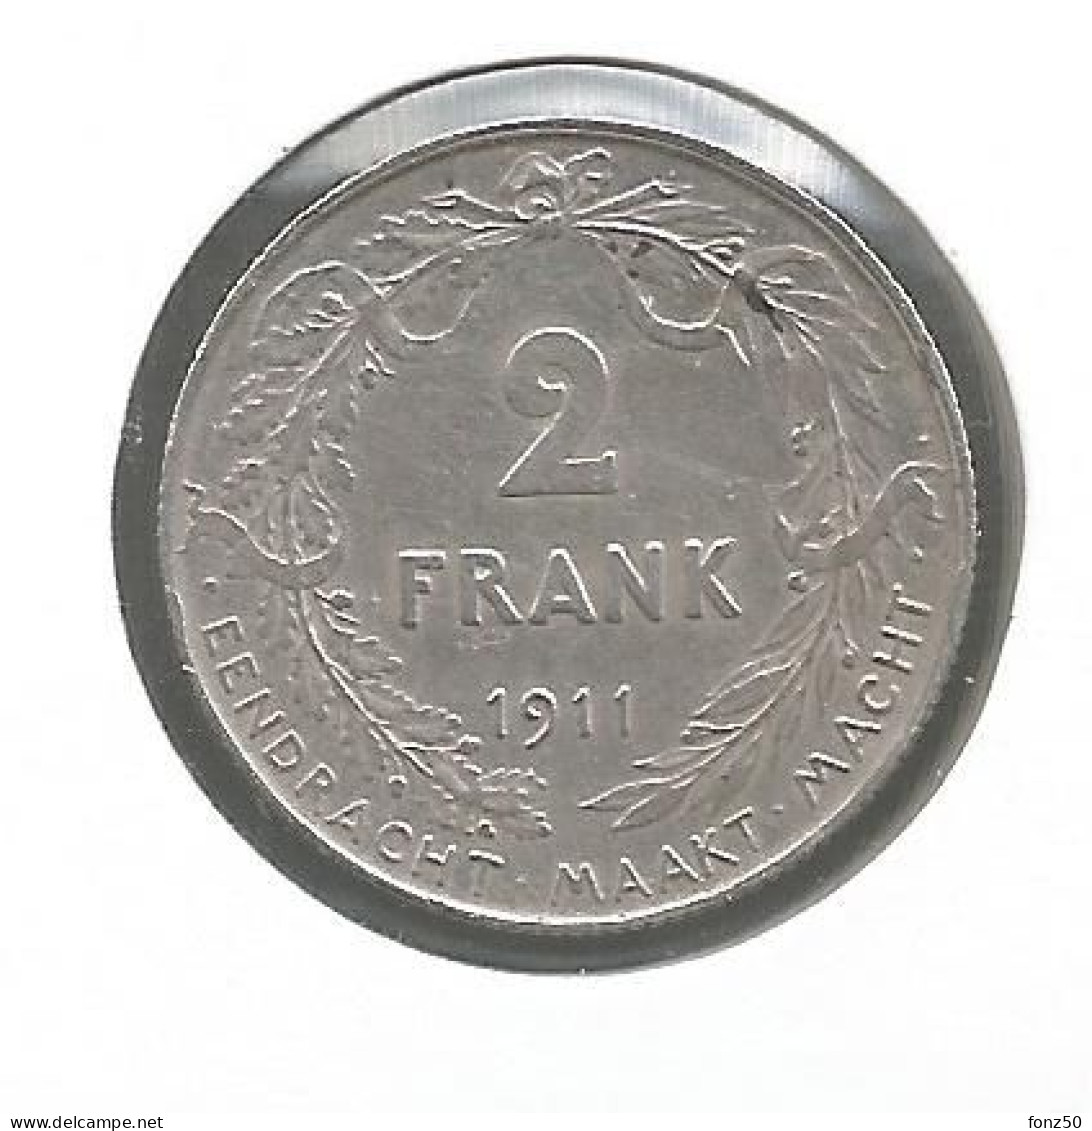 ALBERT I * 2 Frank 1911 Vlaams * Prachtig * Nr 12980 - 2 Franchi